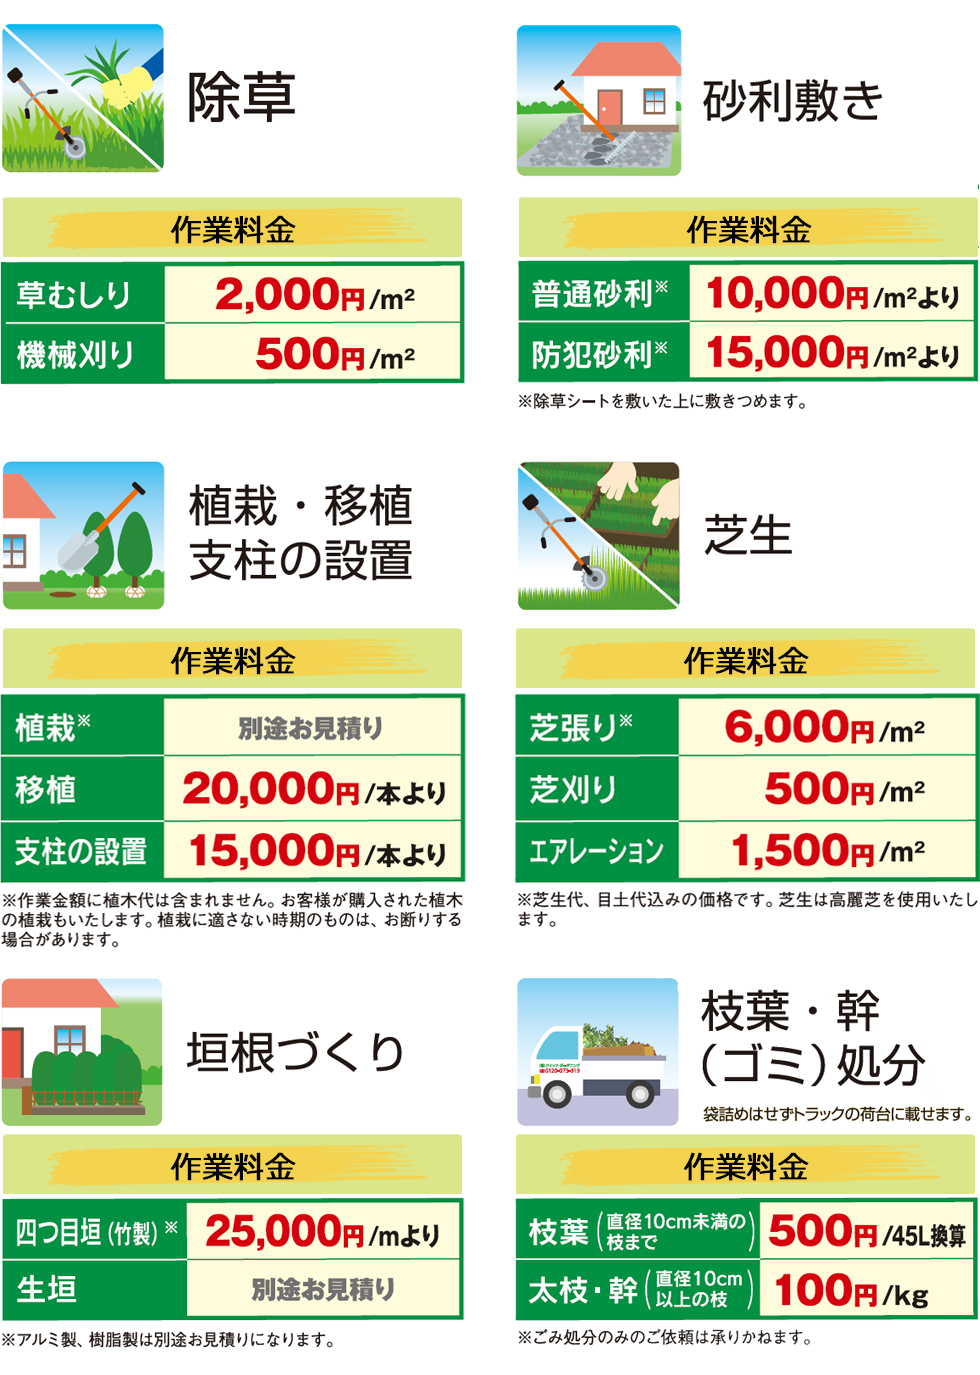 愛知県の植木屋,除草,砂利敷き,垣根づくり,庭造り